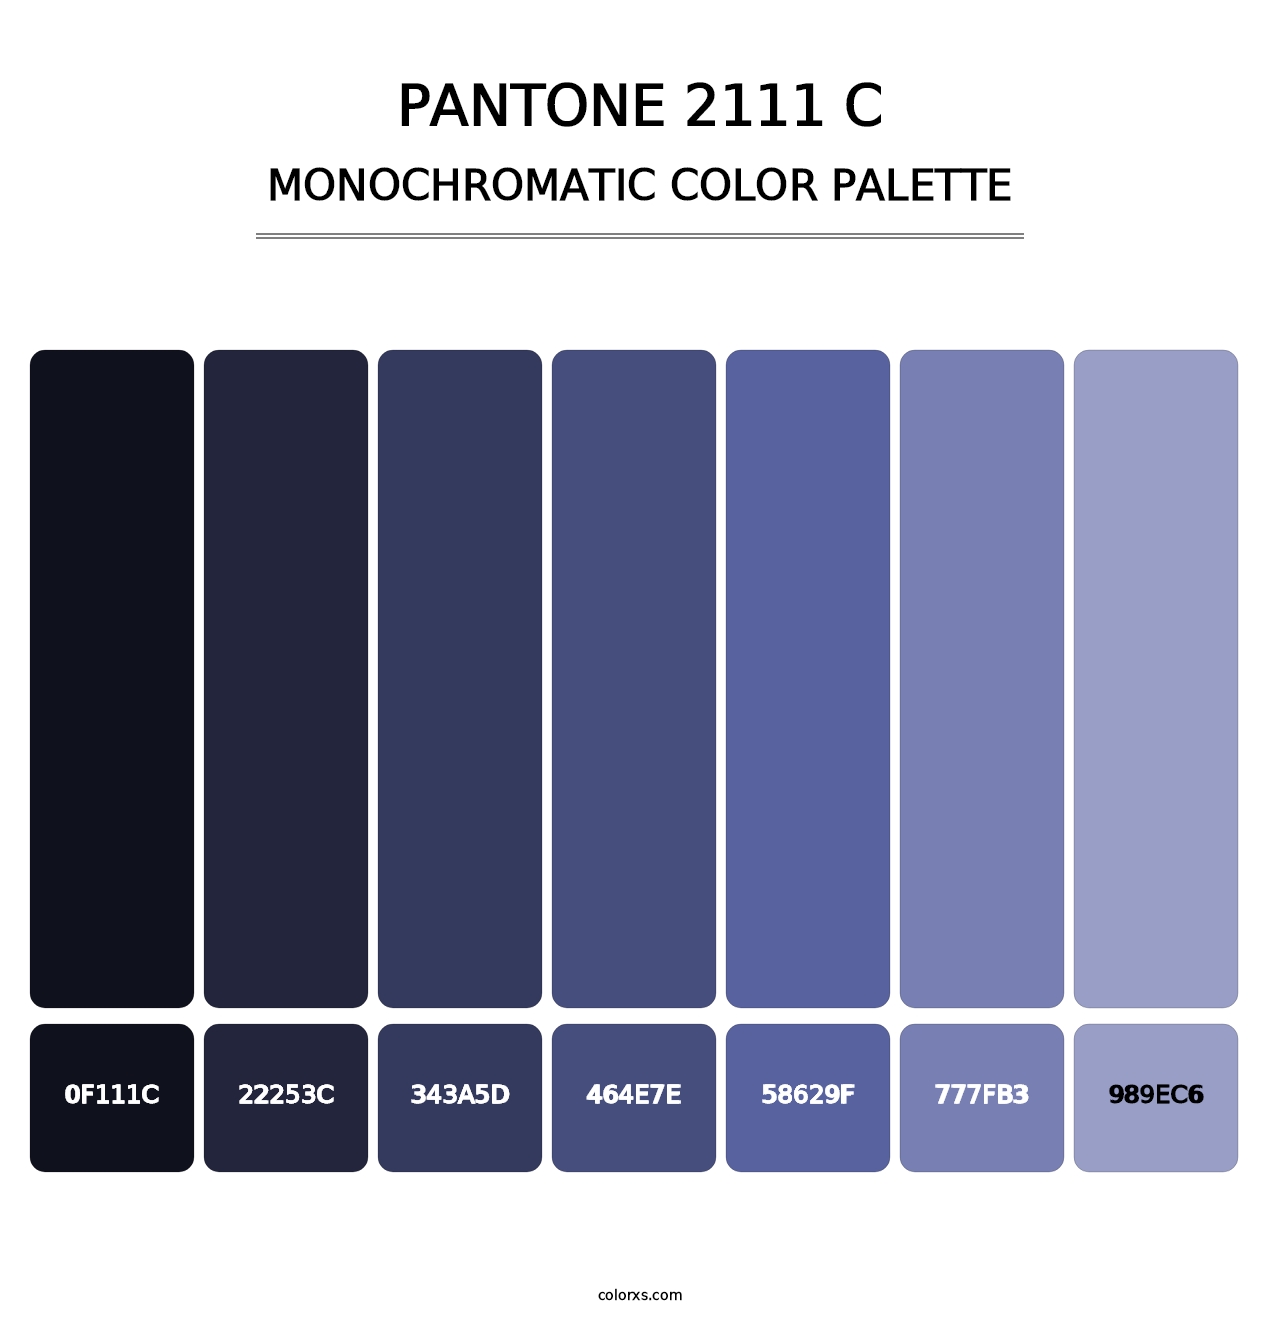 PANTONE 2111 C - Monochromatic Color Palette